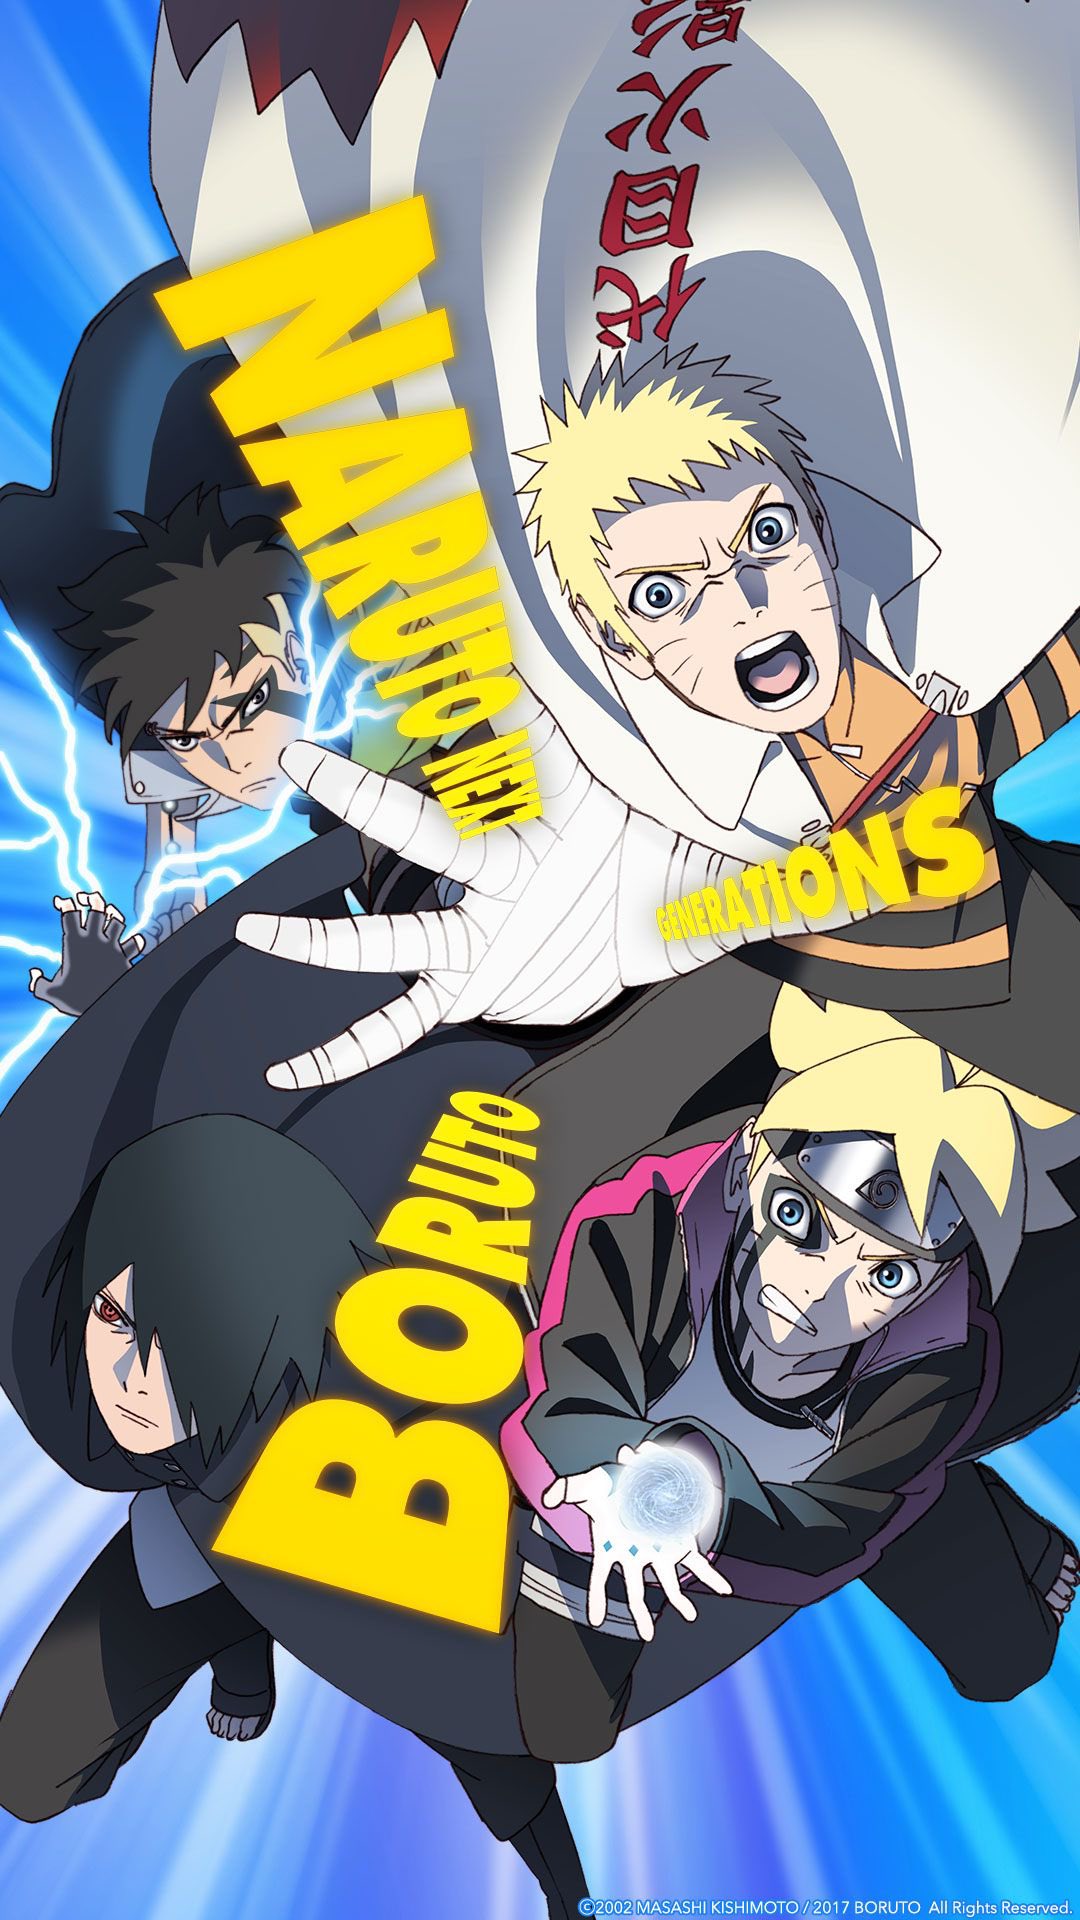 OFICIAL o Anime de boruto vai voltar em Agosto #boruto #oficial